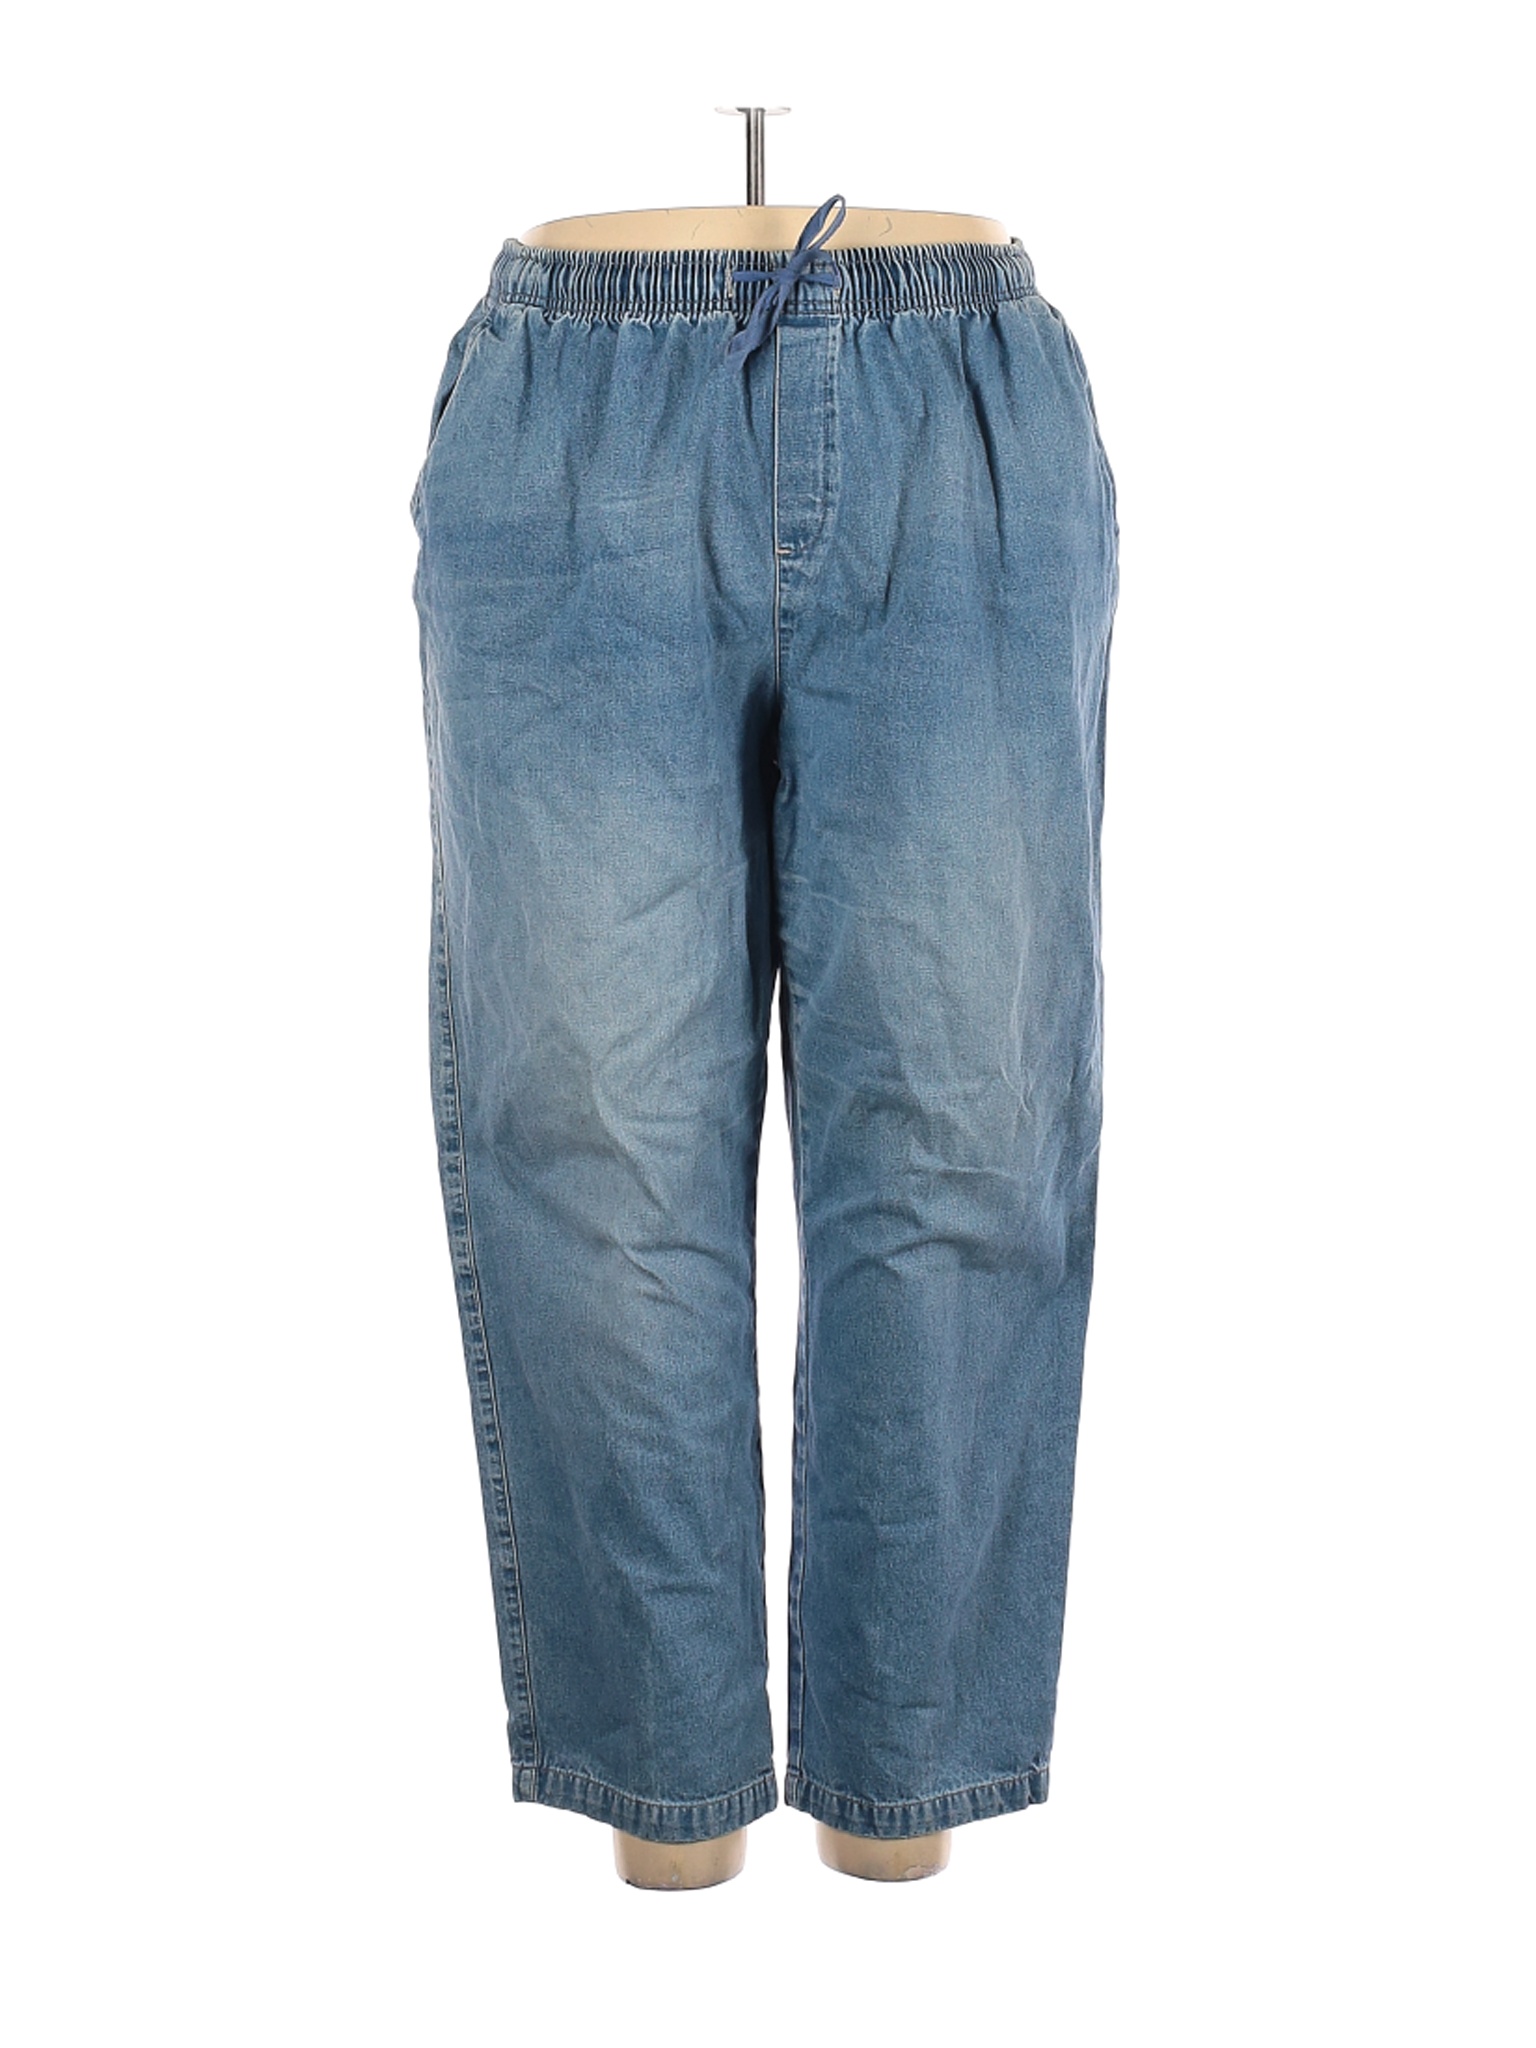 Cabin Creek Women Blue Jeans 22 Plus | eBay